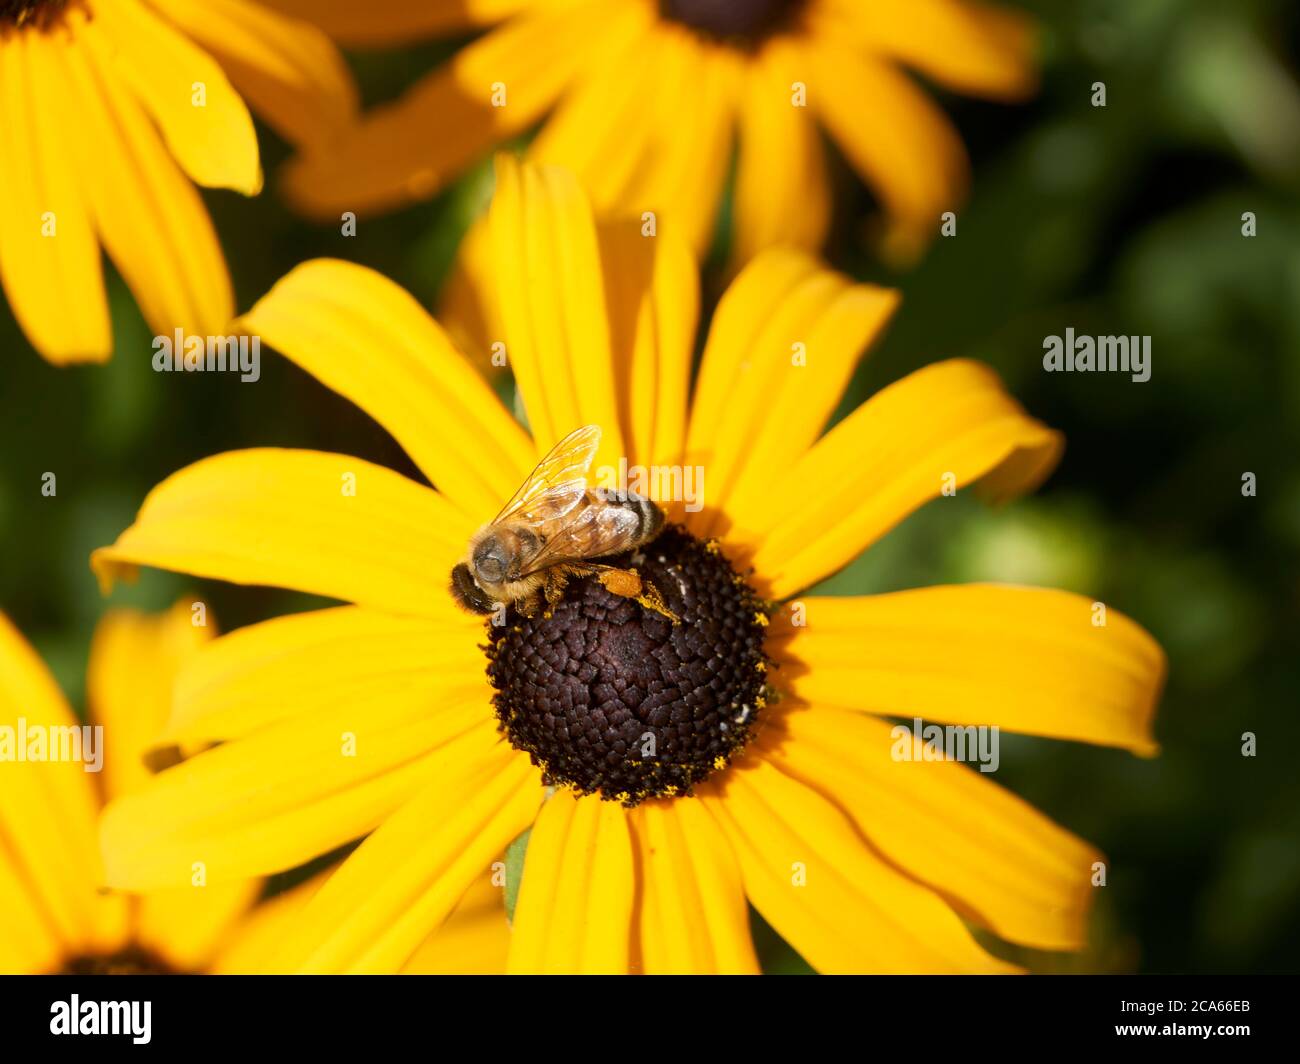 Nahaufnahme einer westlichen Honigbiene APIs mellifera auf einer Brown-eyed Susan Rudbeckia hirta Blume, Vancouver, BC, Kanada Stockfoto